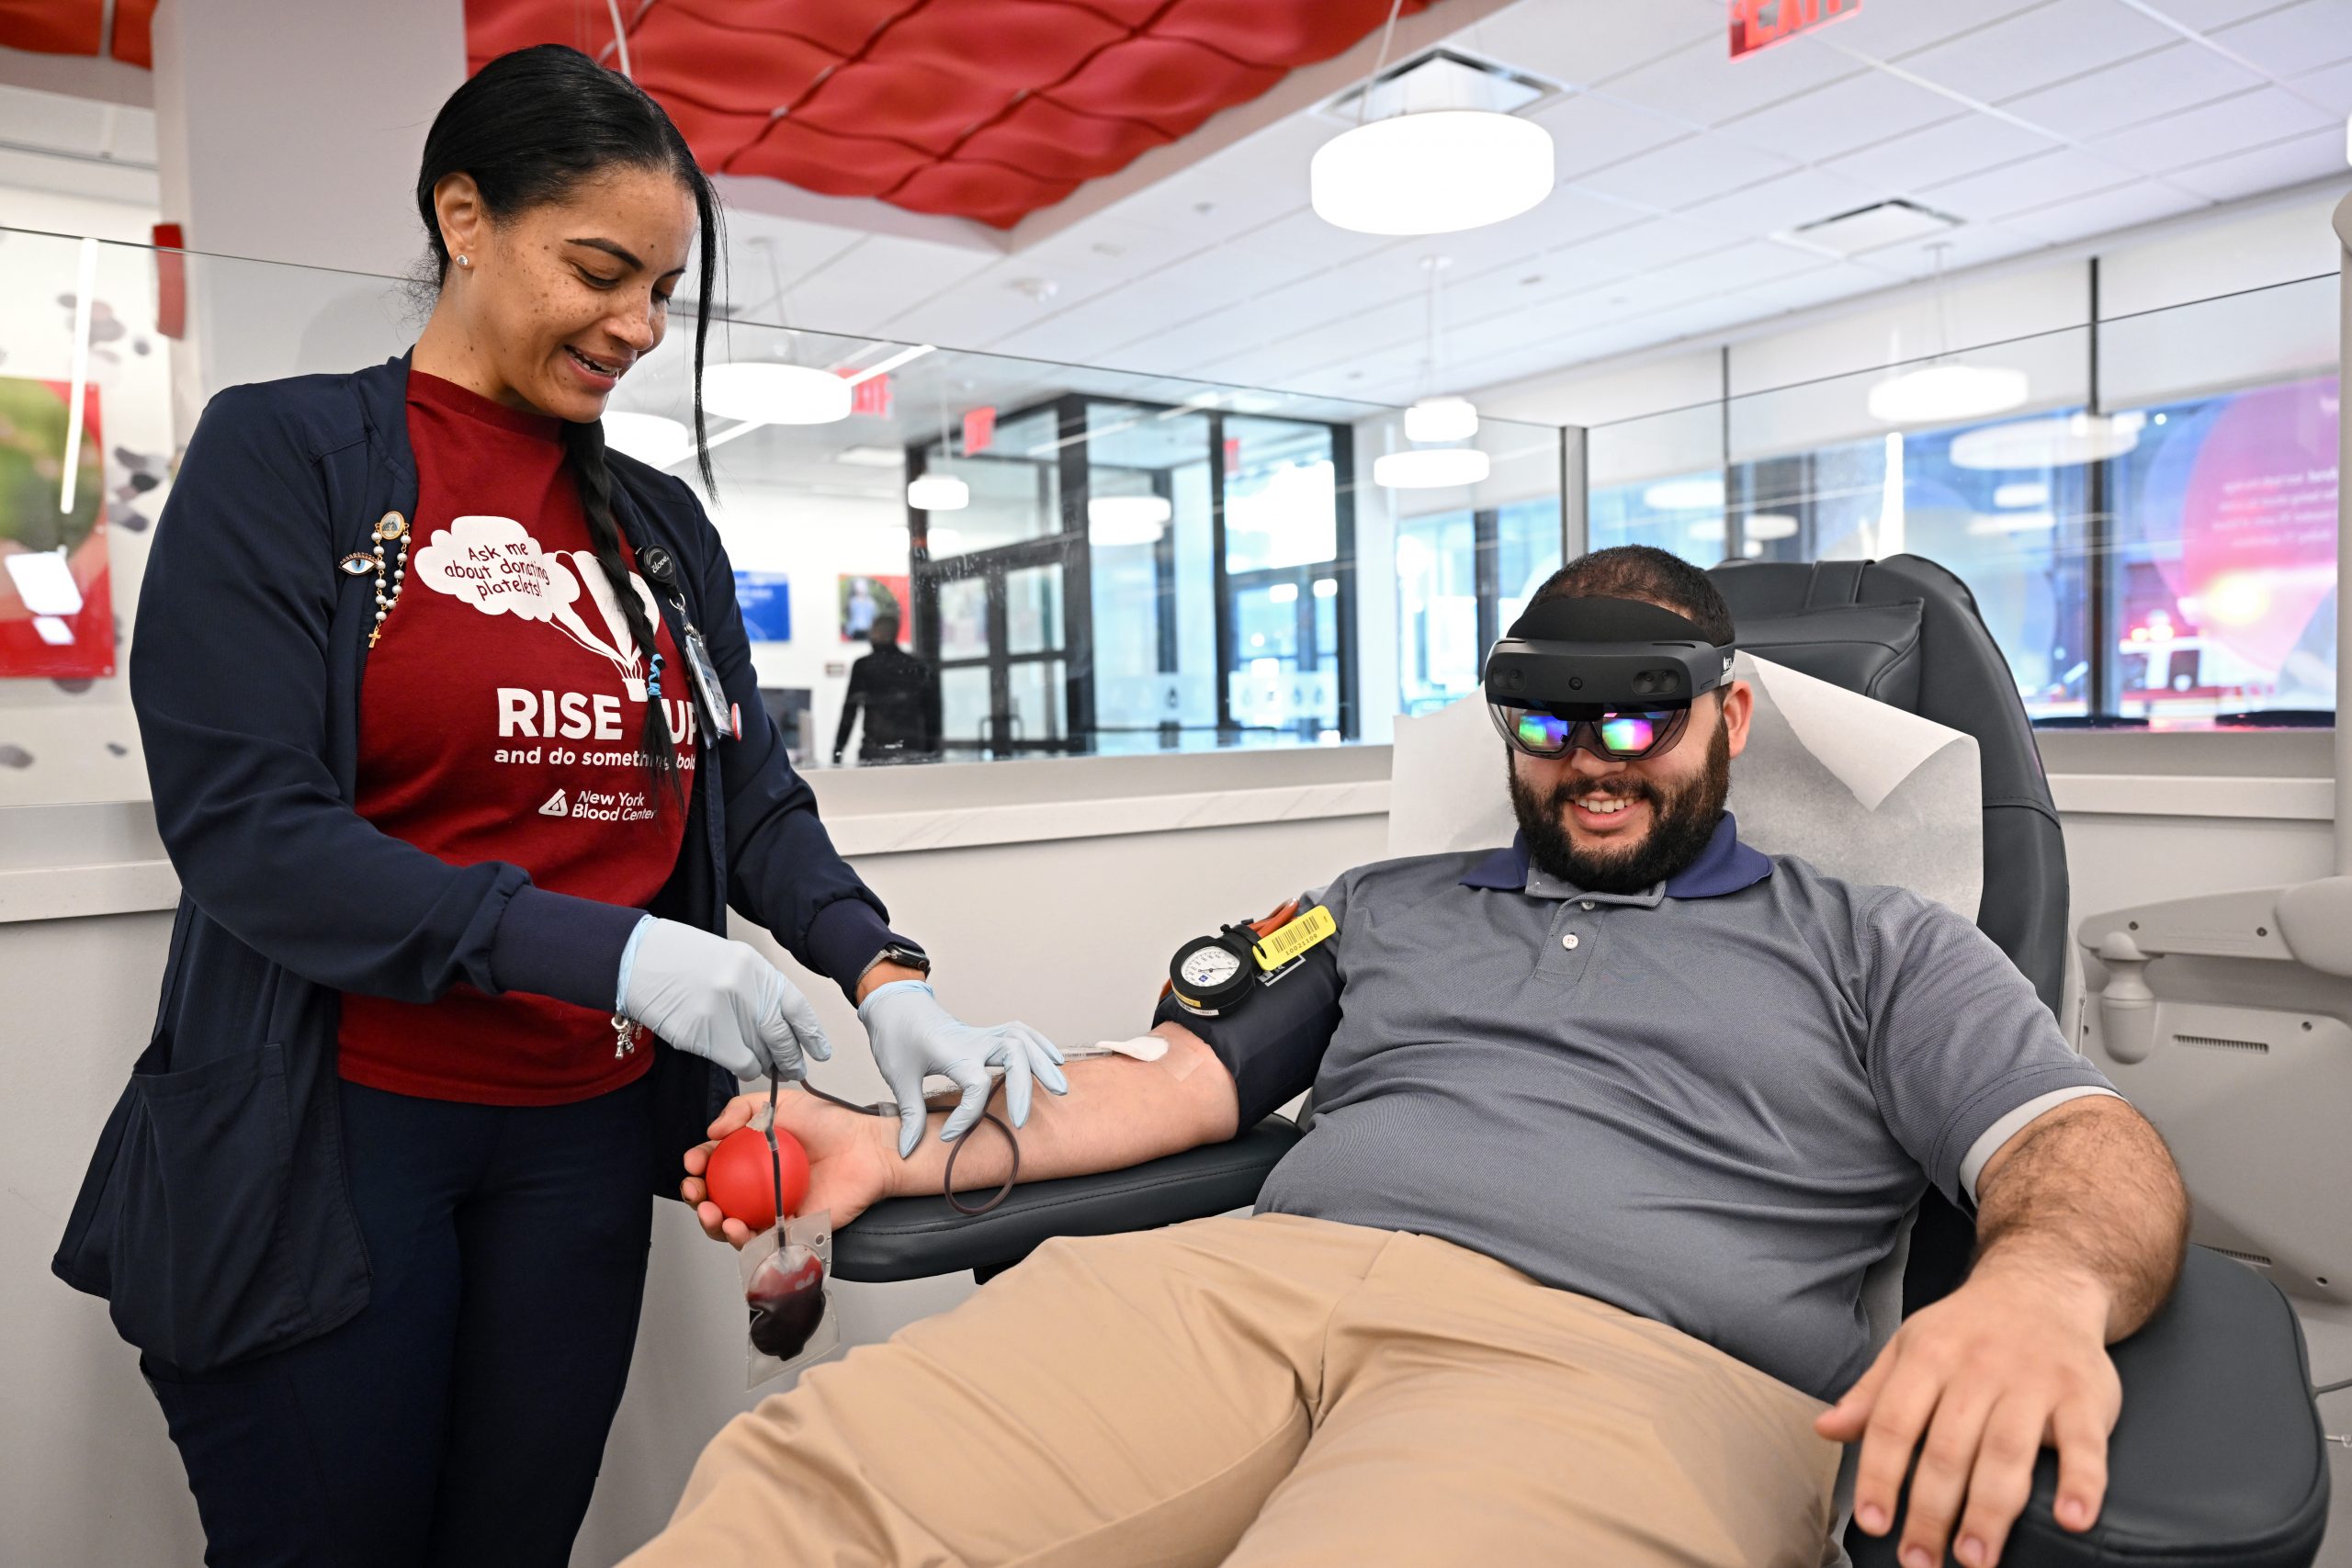 Un miembro del personal en un sitio de donación de sangre recolecta sangre de un donante sentado que usa una diadema HoloLens 2 de realidad mixta.